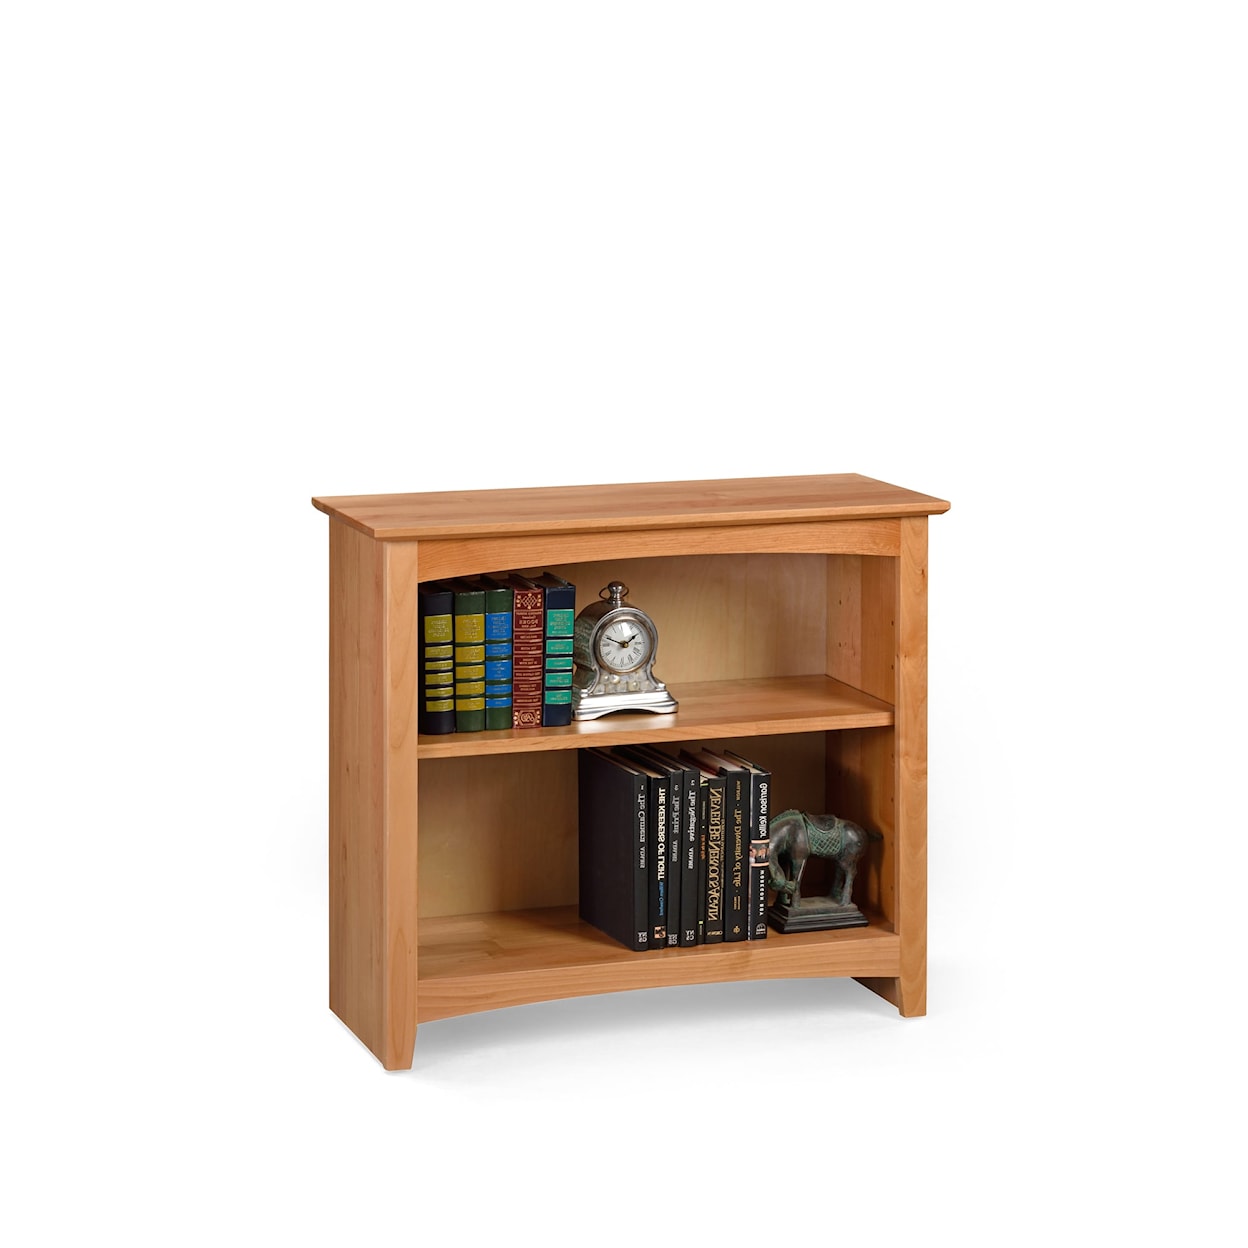 Archbold Furniture Alder Bookcases Open Bookcase